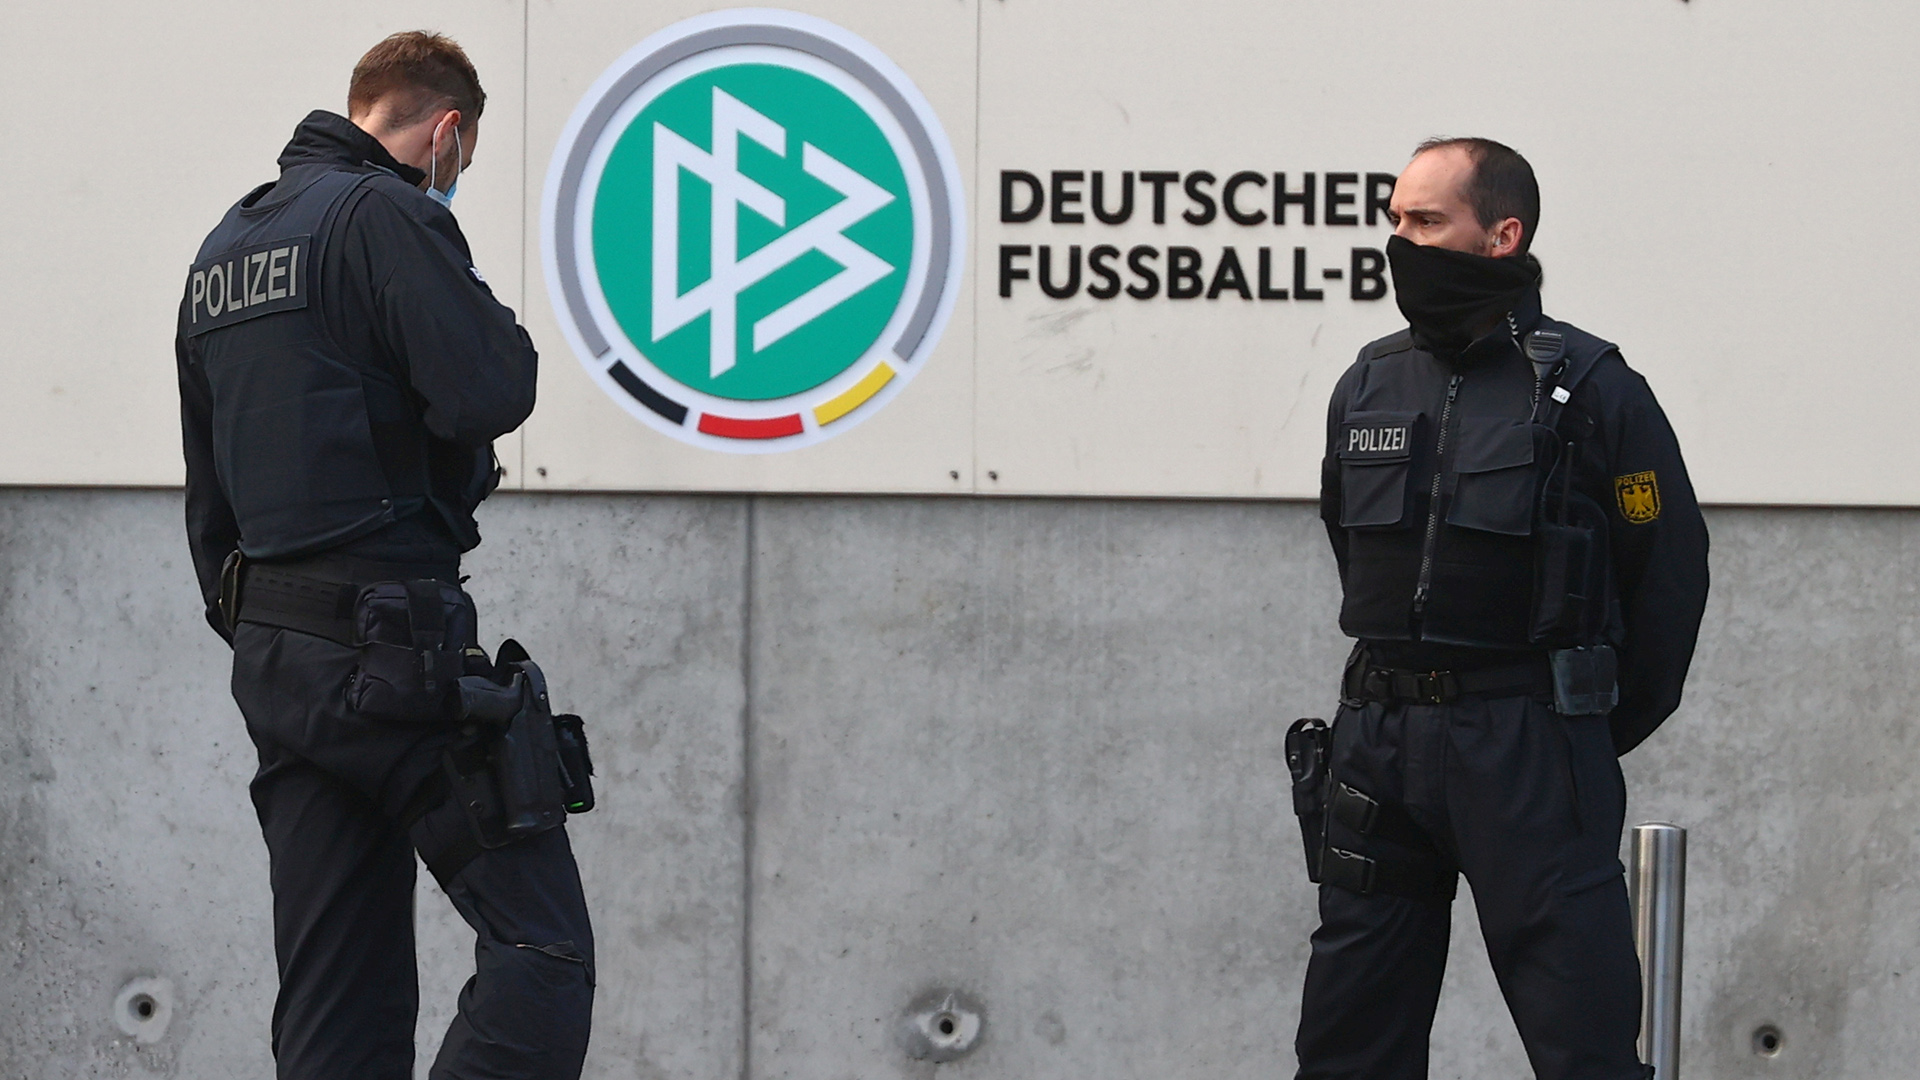 Die Polizei sichert den Bereich vor der DFB Zentrale in Frankfurt am Main | REUTERS